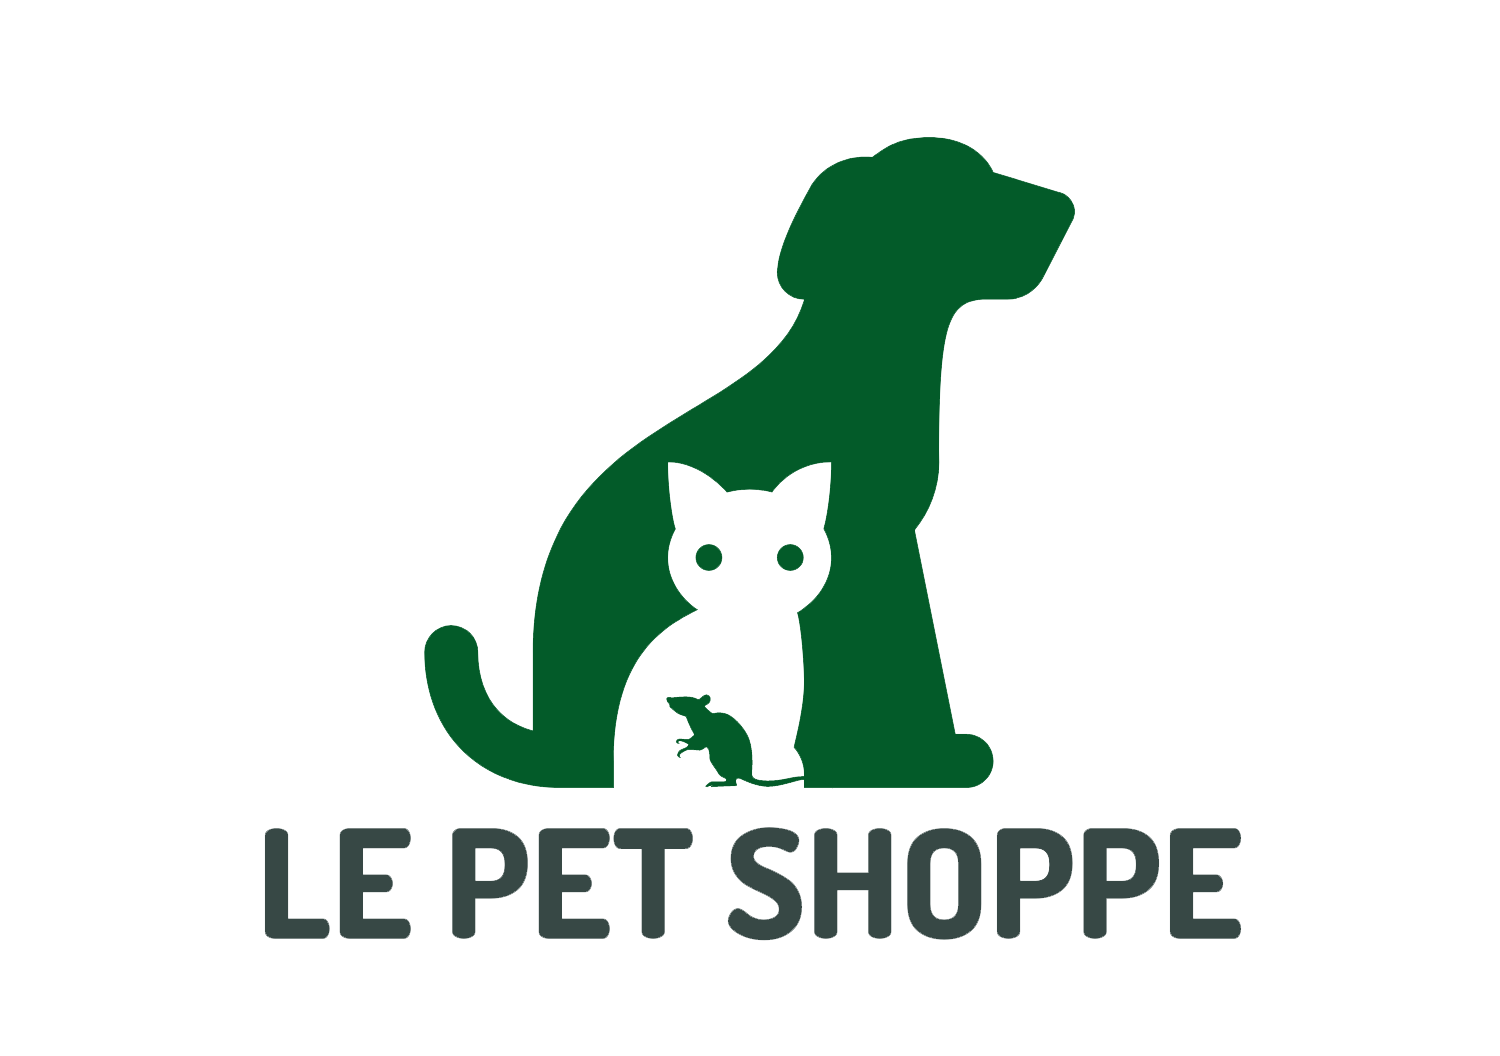 Le Pet Shoppe